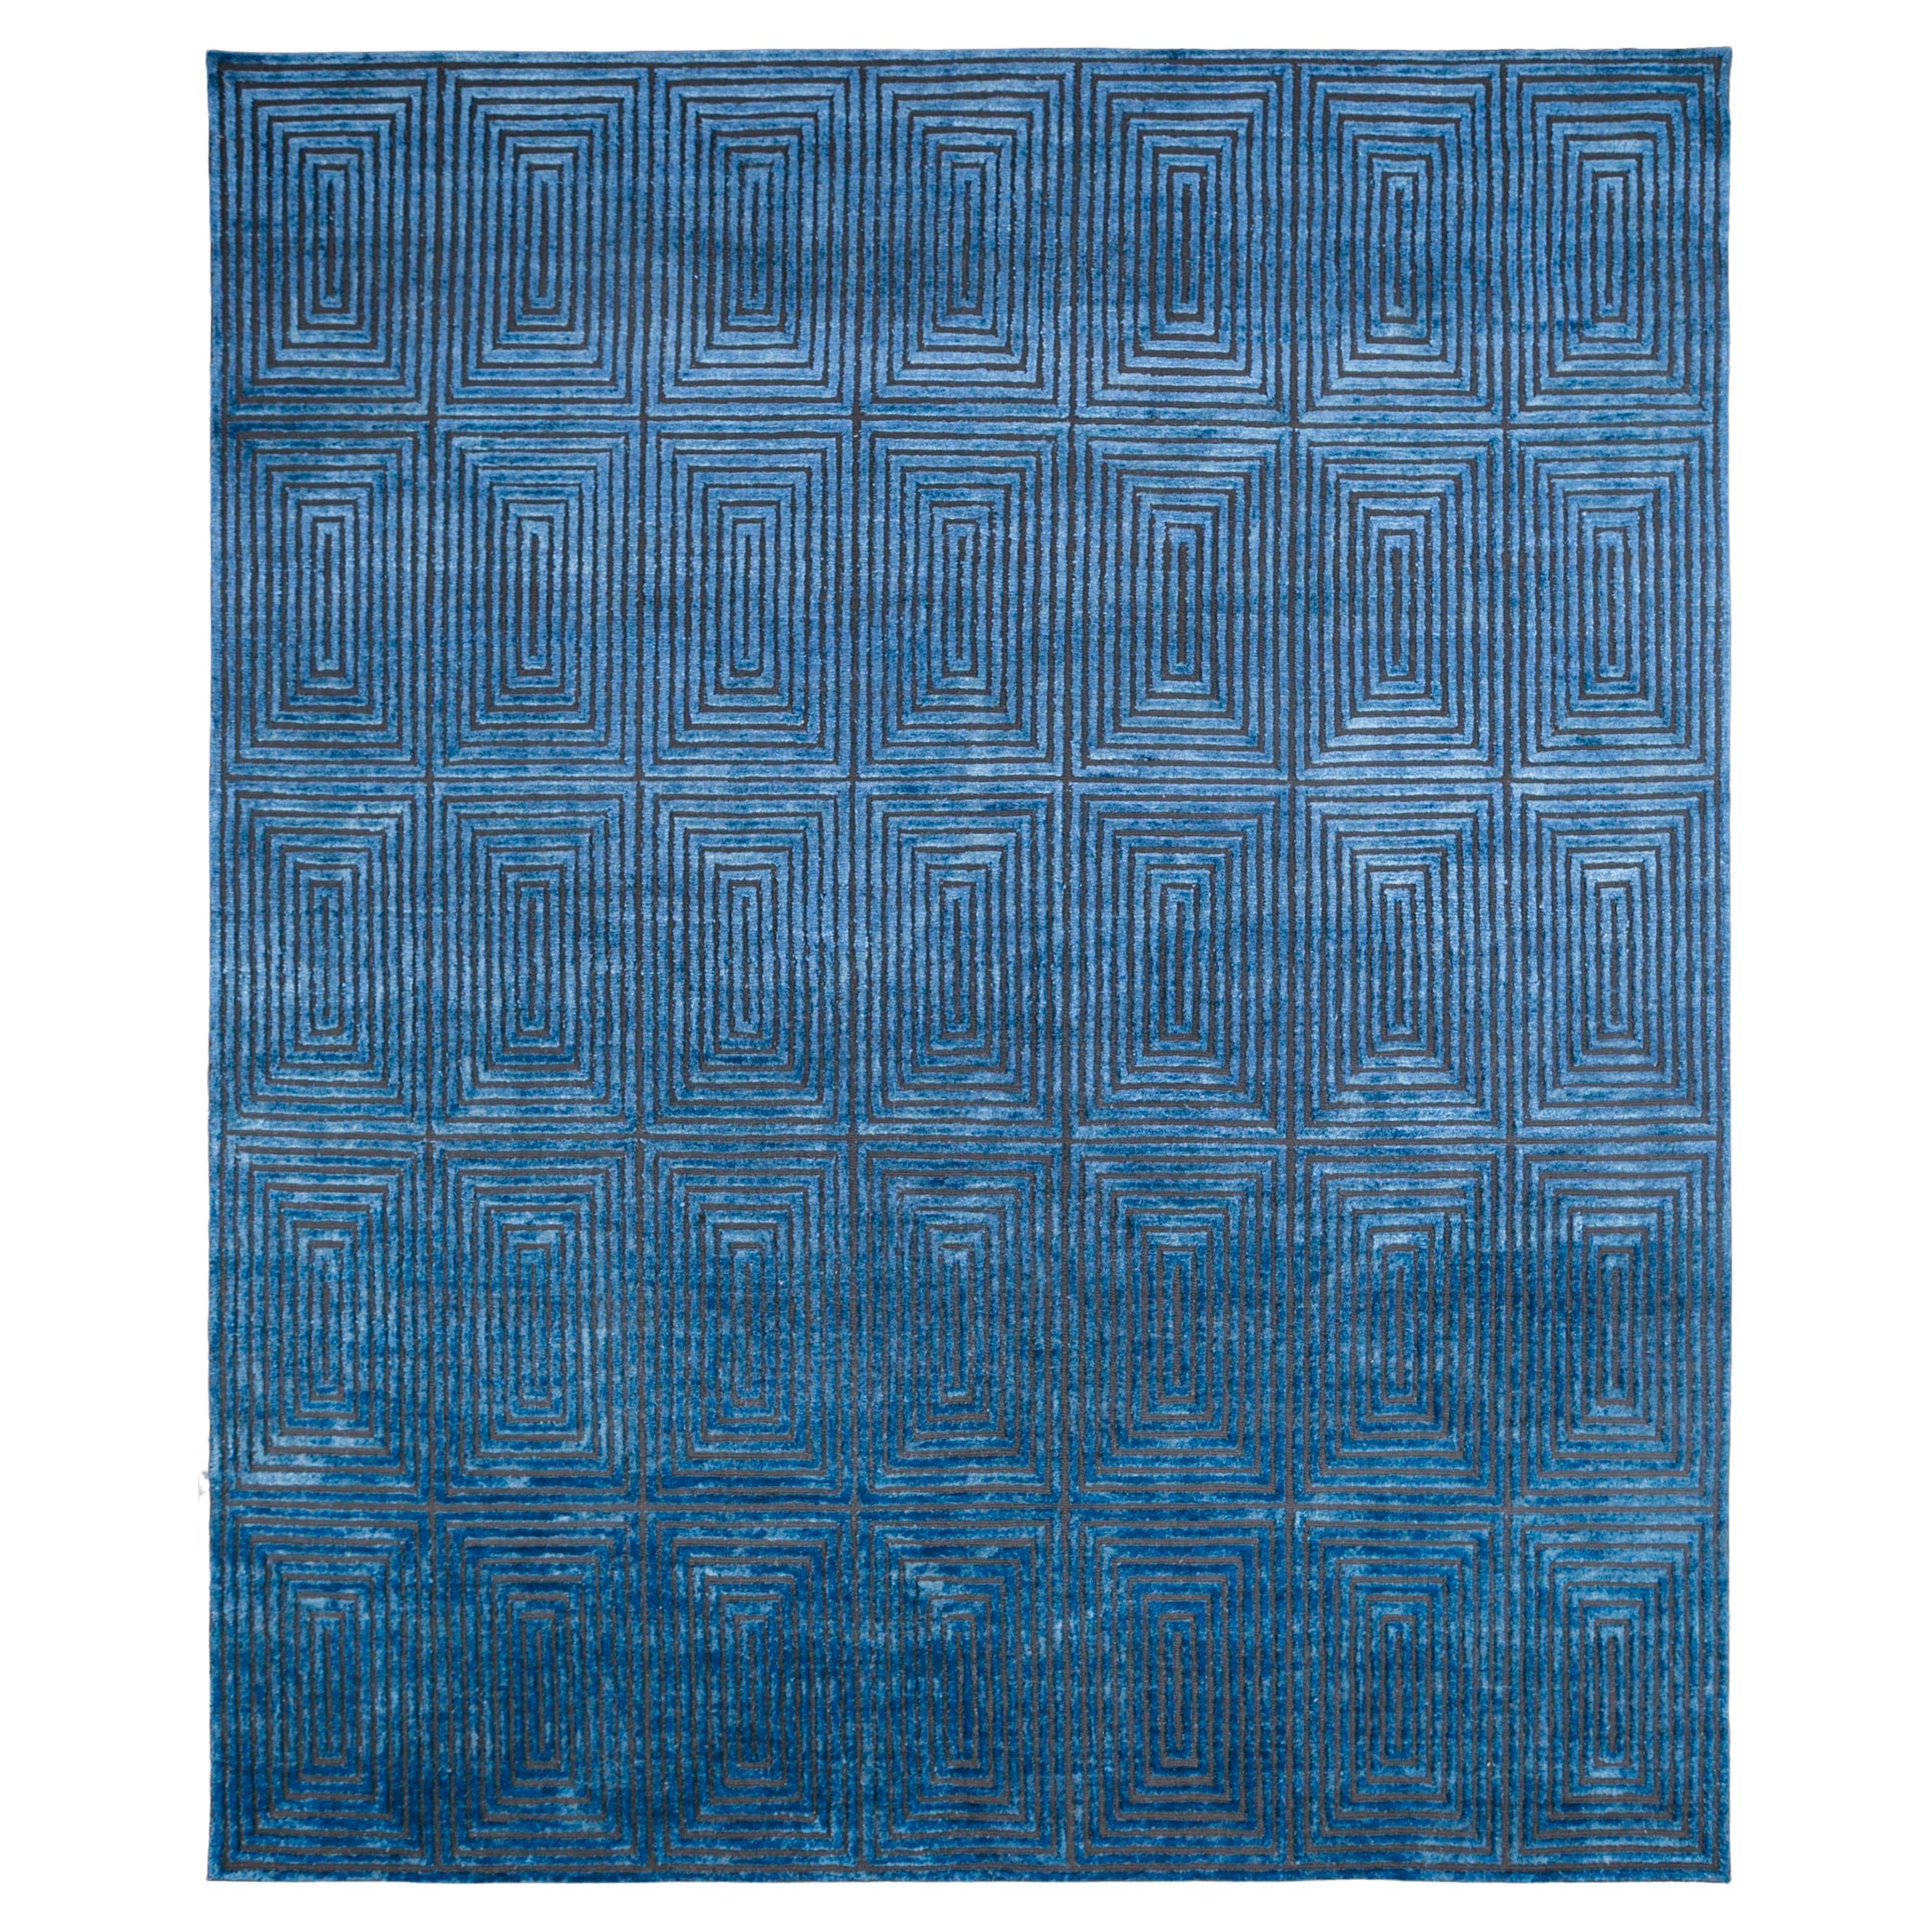  Kobaltfarbener Teppich von Rural Weavers, geknüpft, Wolle, Seide, 270x360cm im Angebot